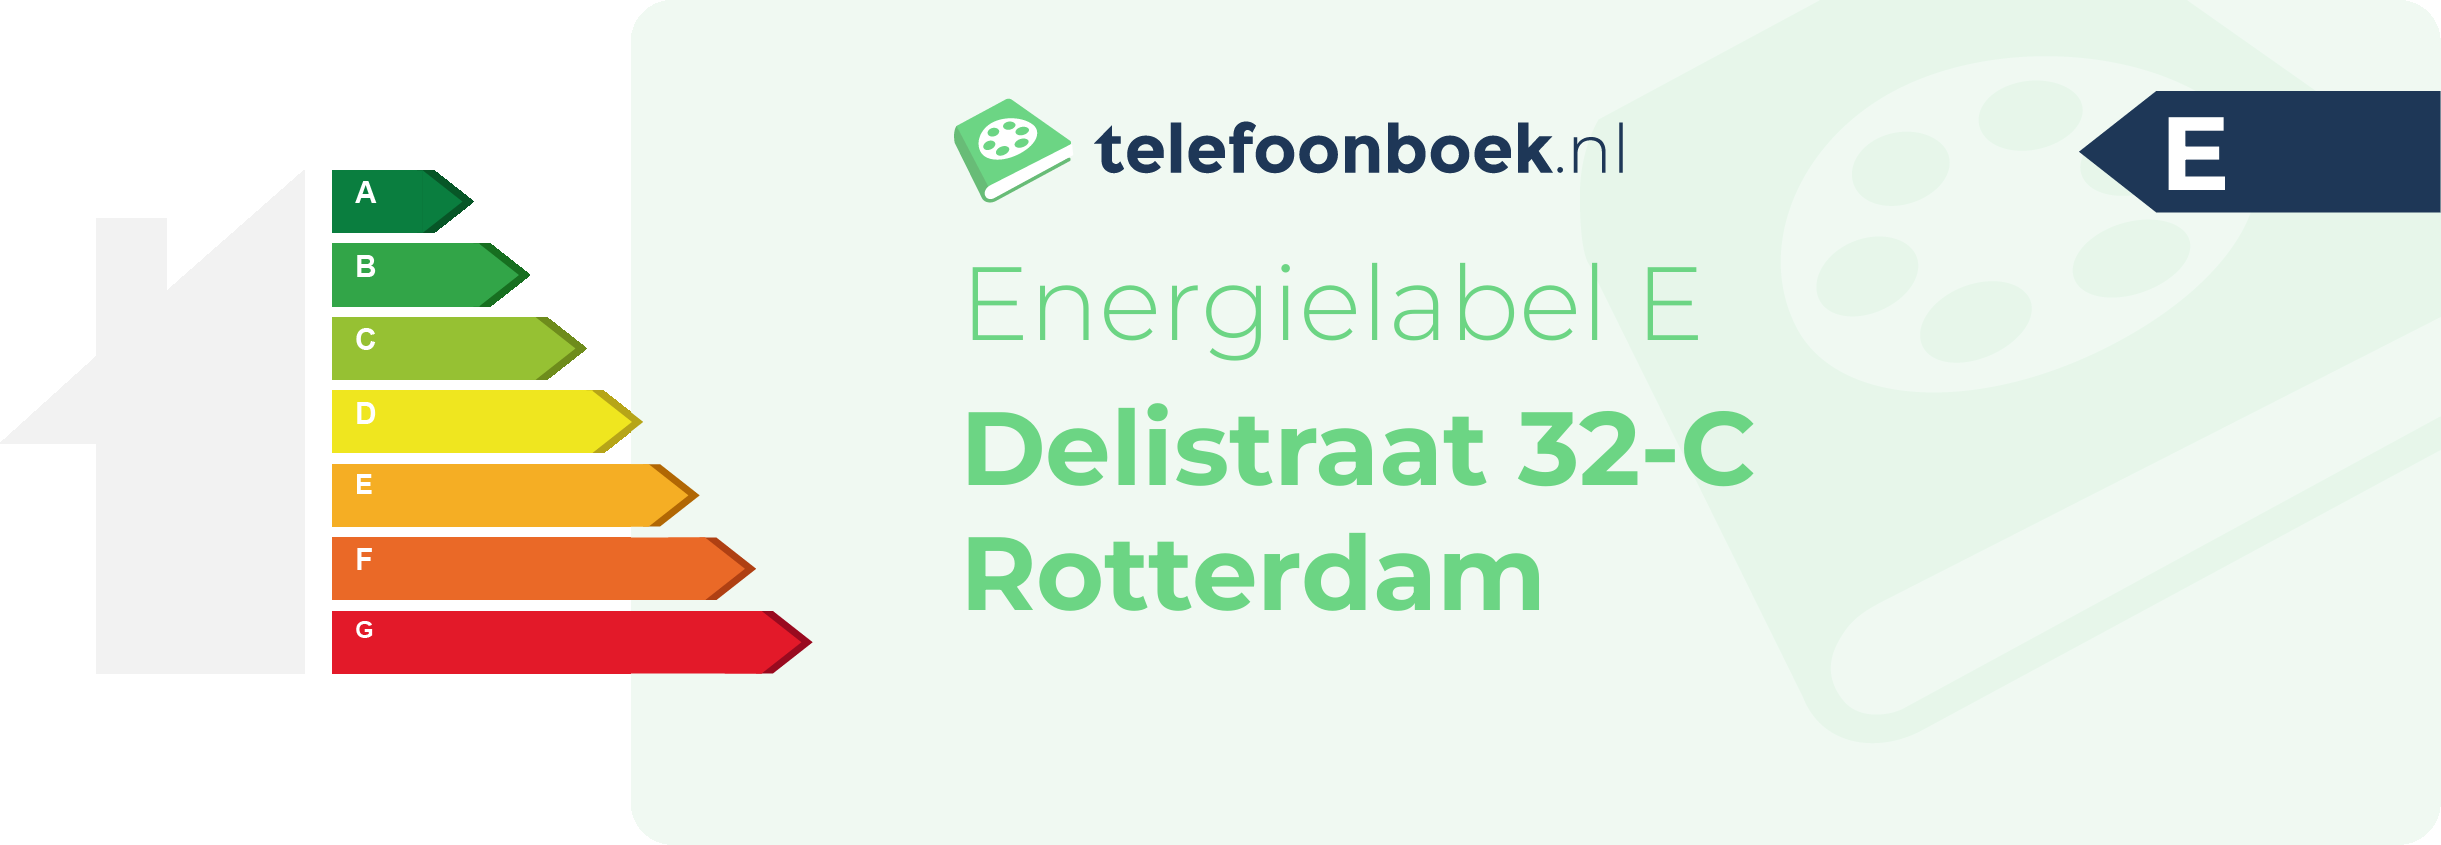 Energielabel Delistraat 32-C Rotterdam